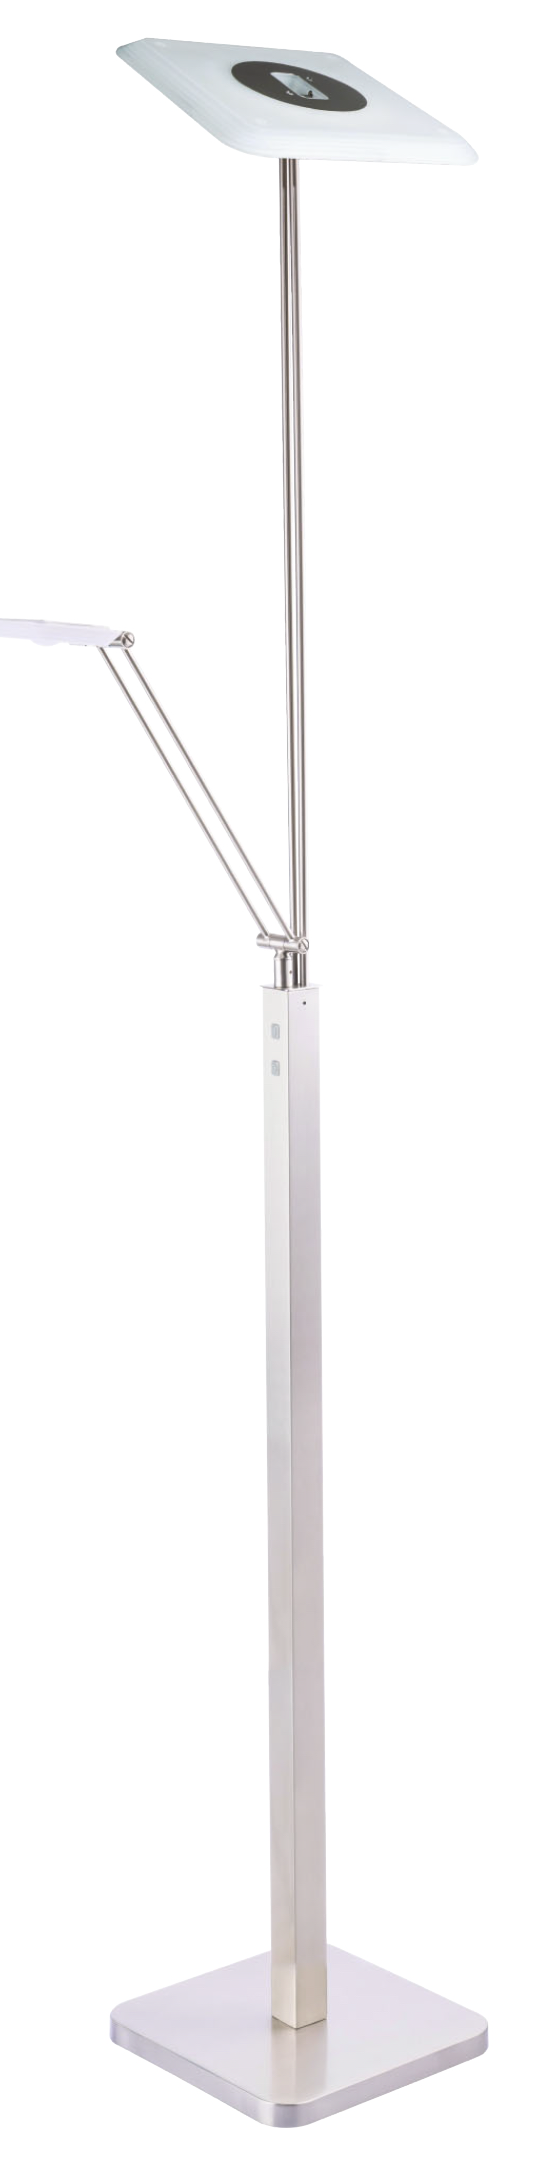 Lampe de plancher moderne Kendal TC5020-SN